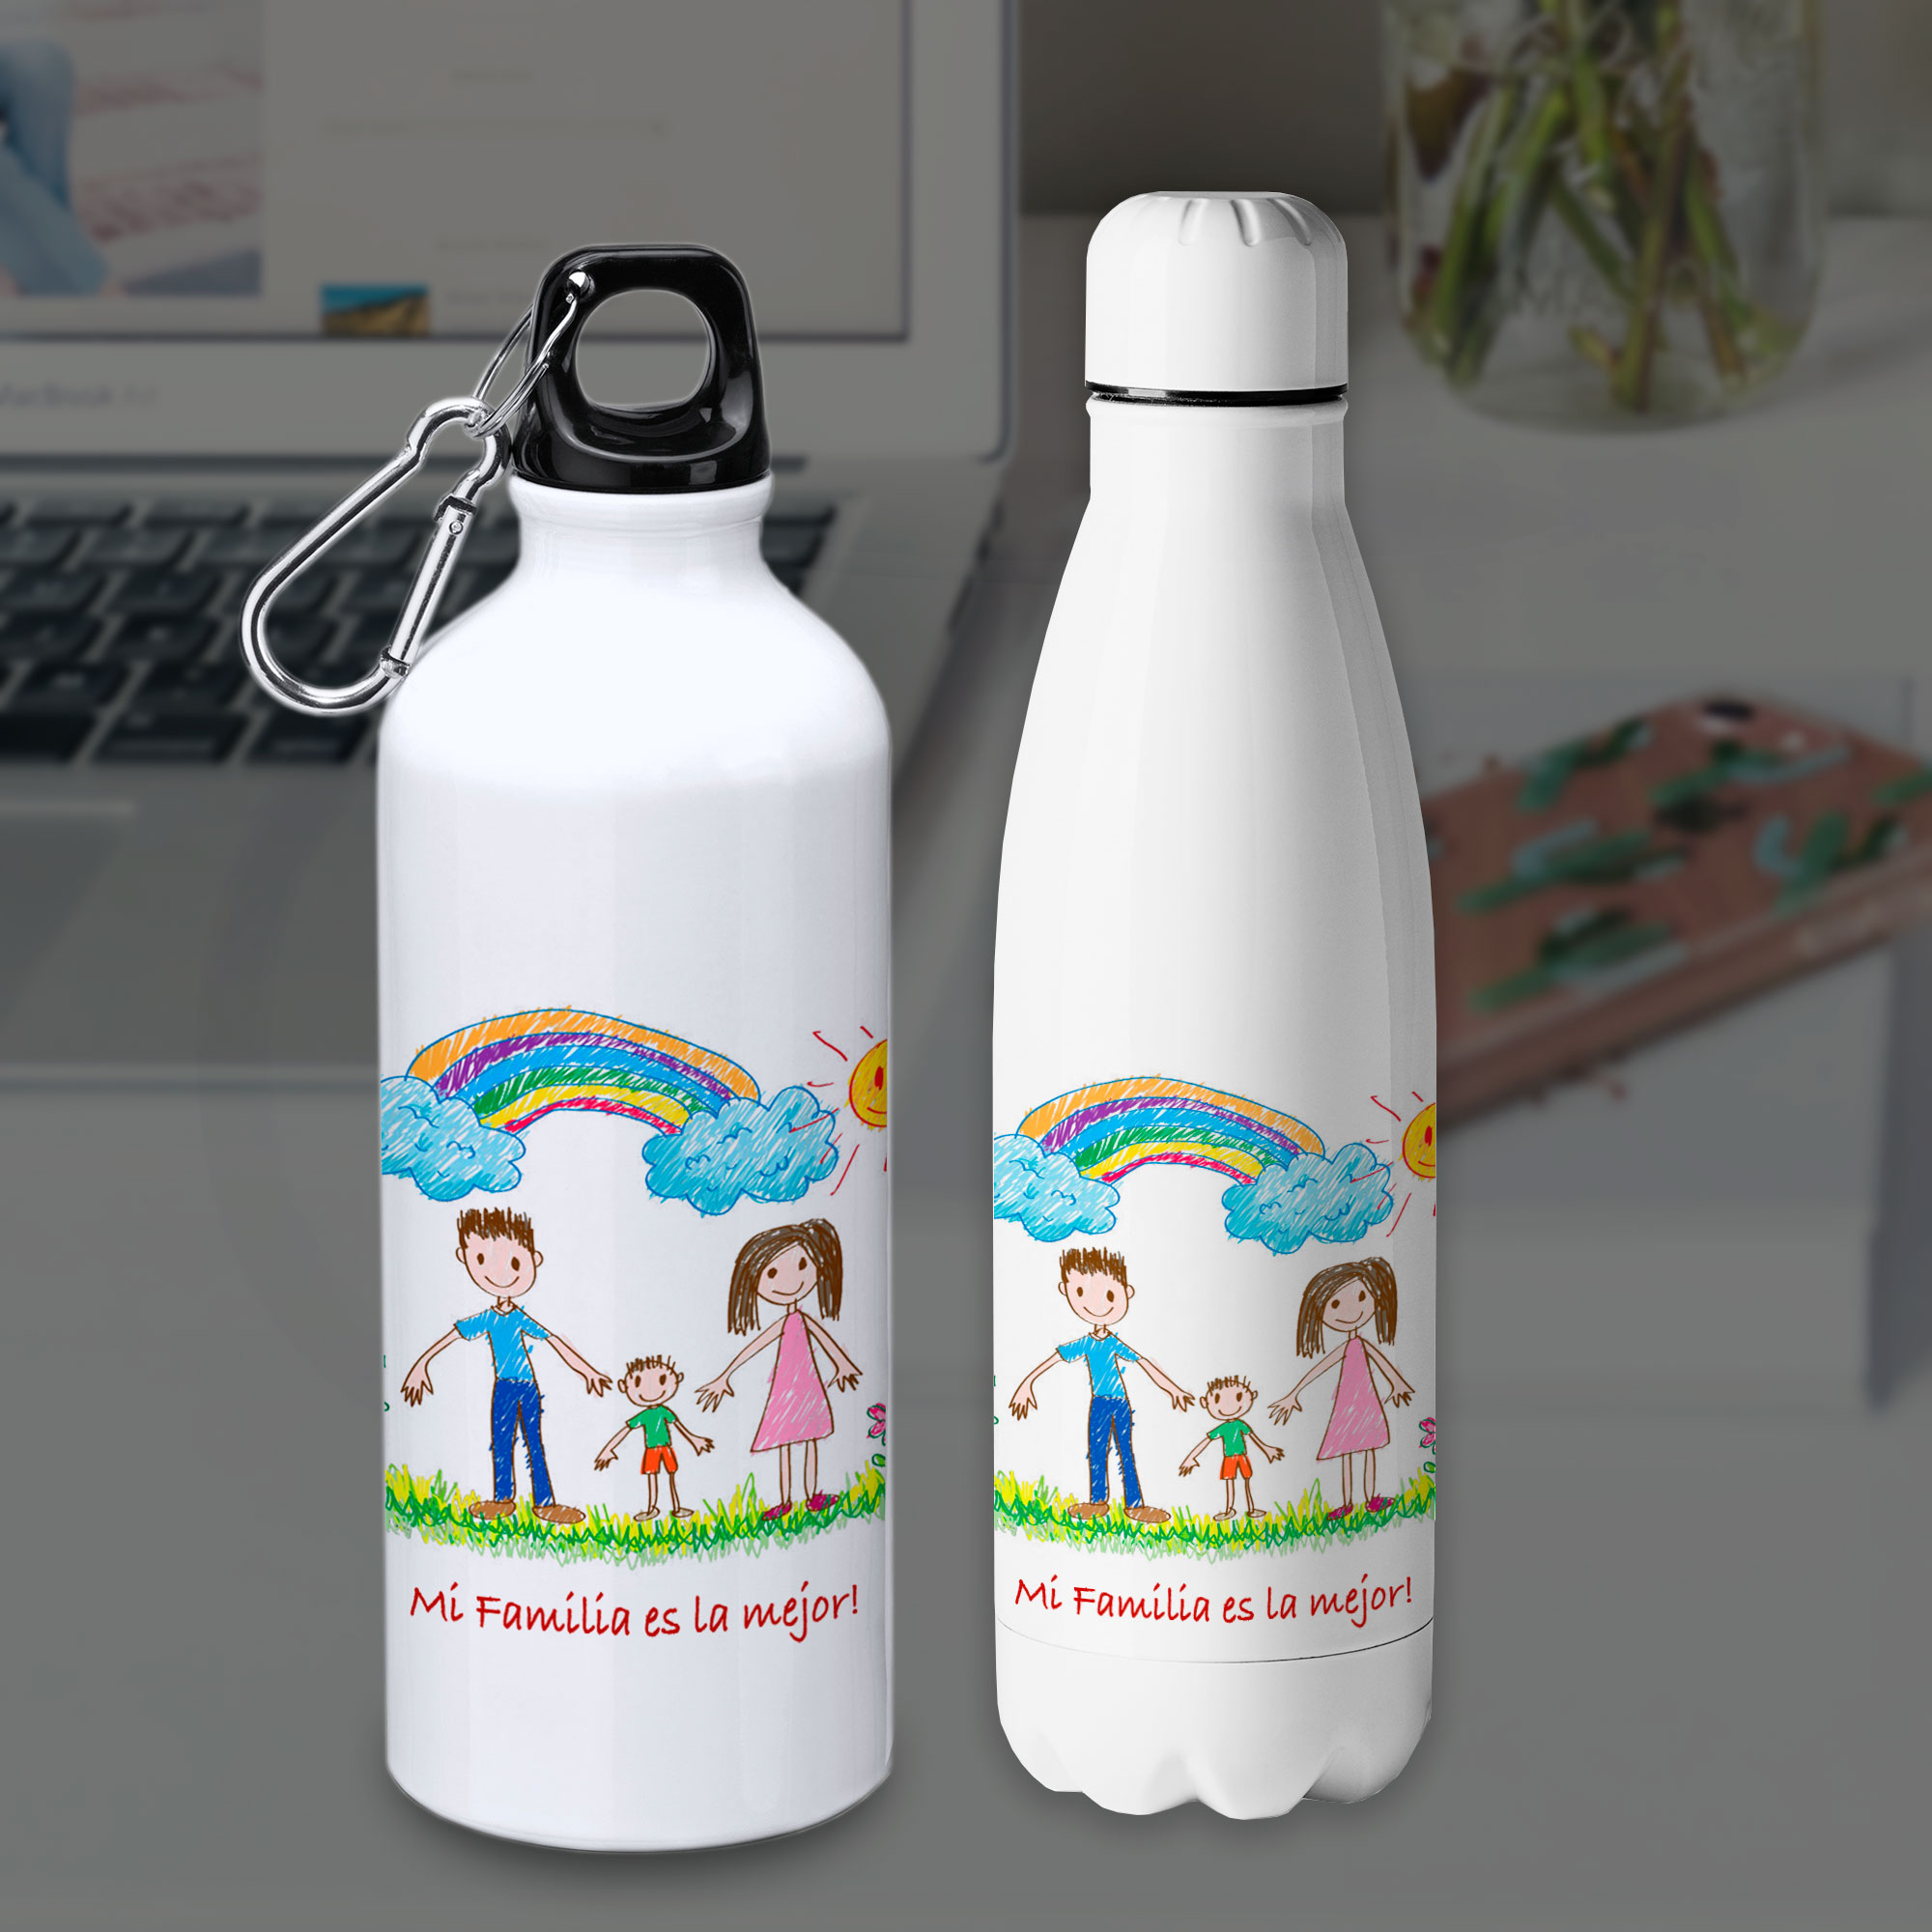 Botellas personalizadas con dibujo